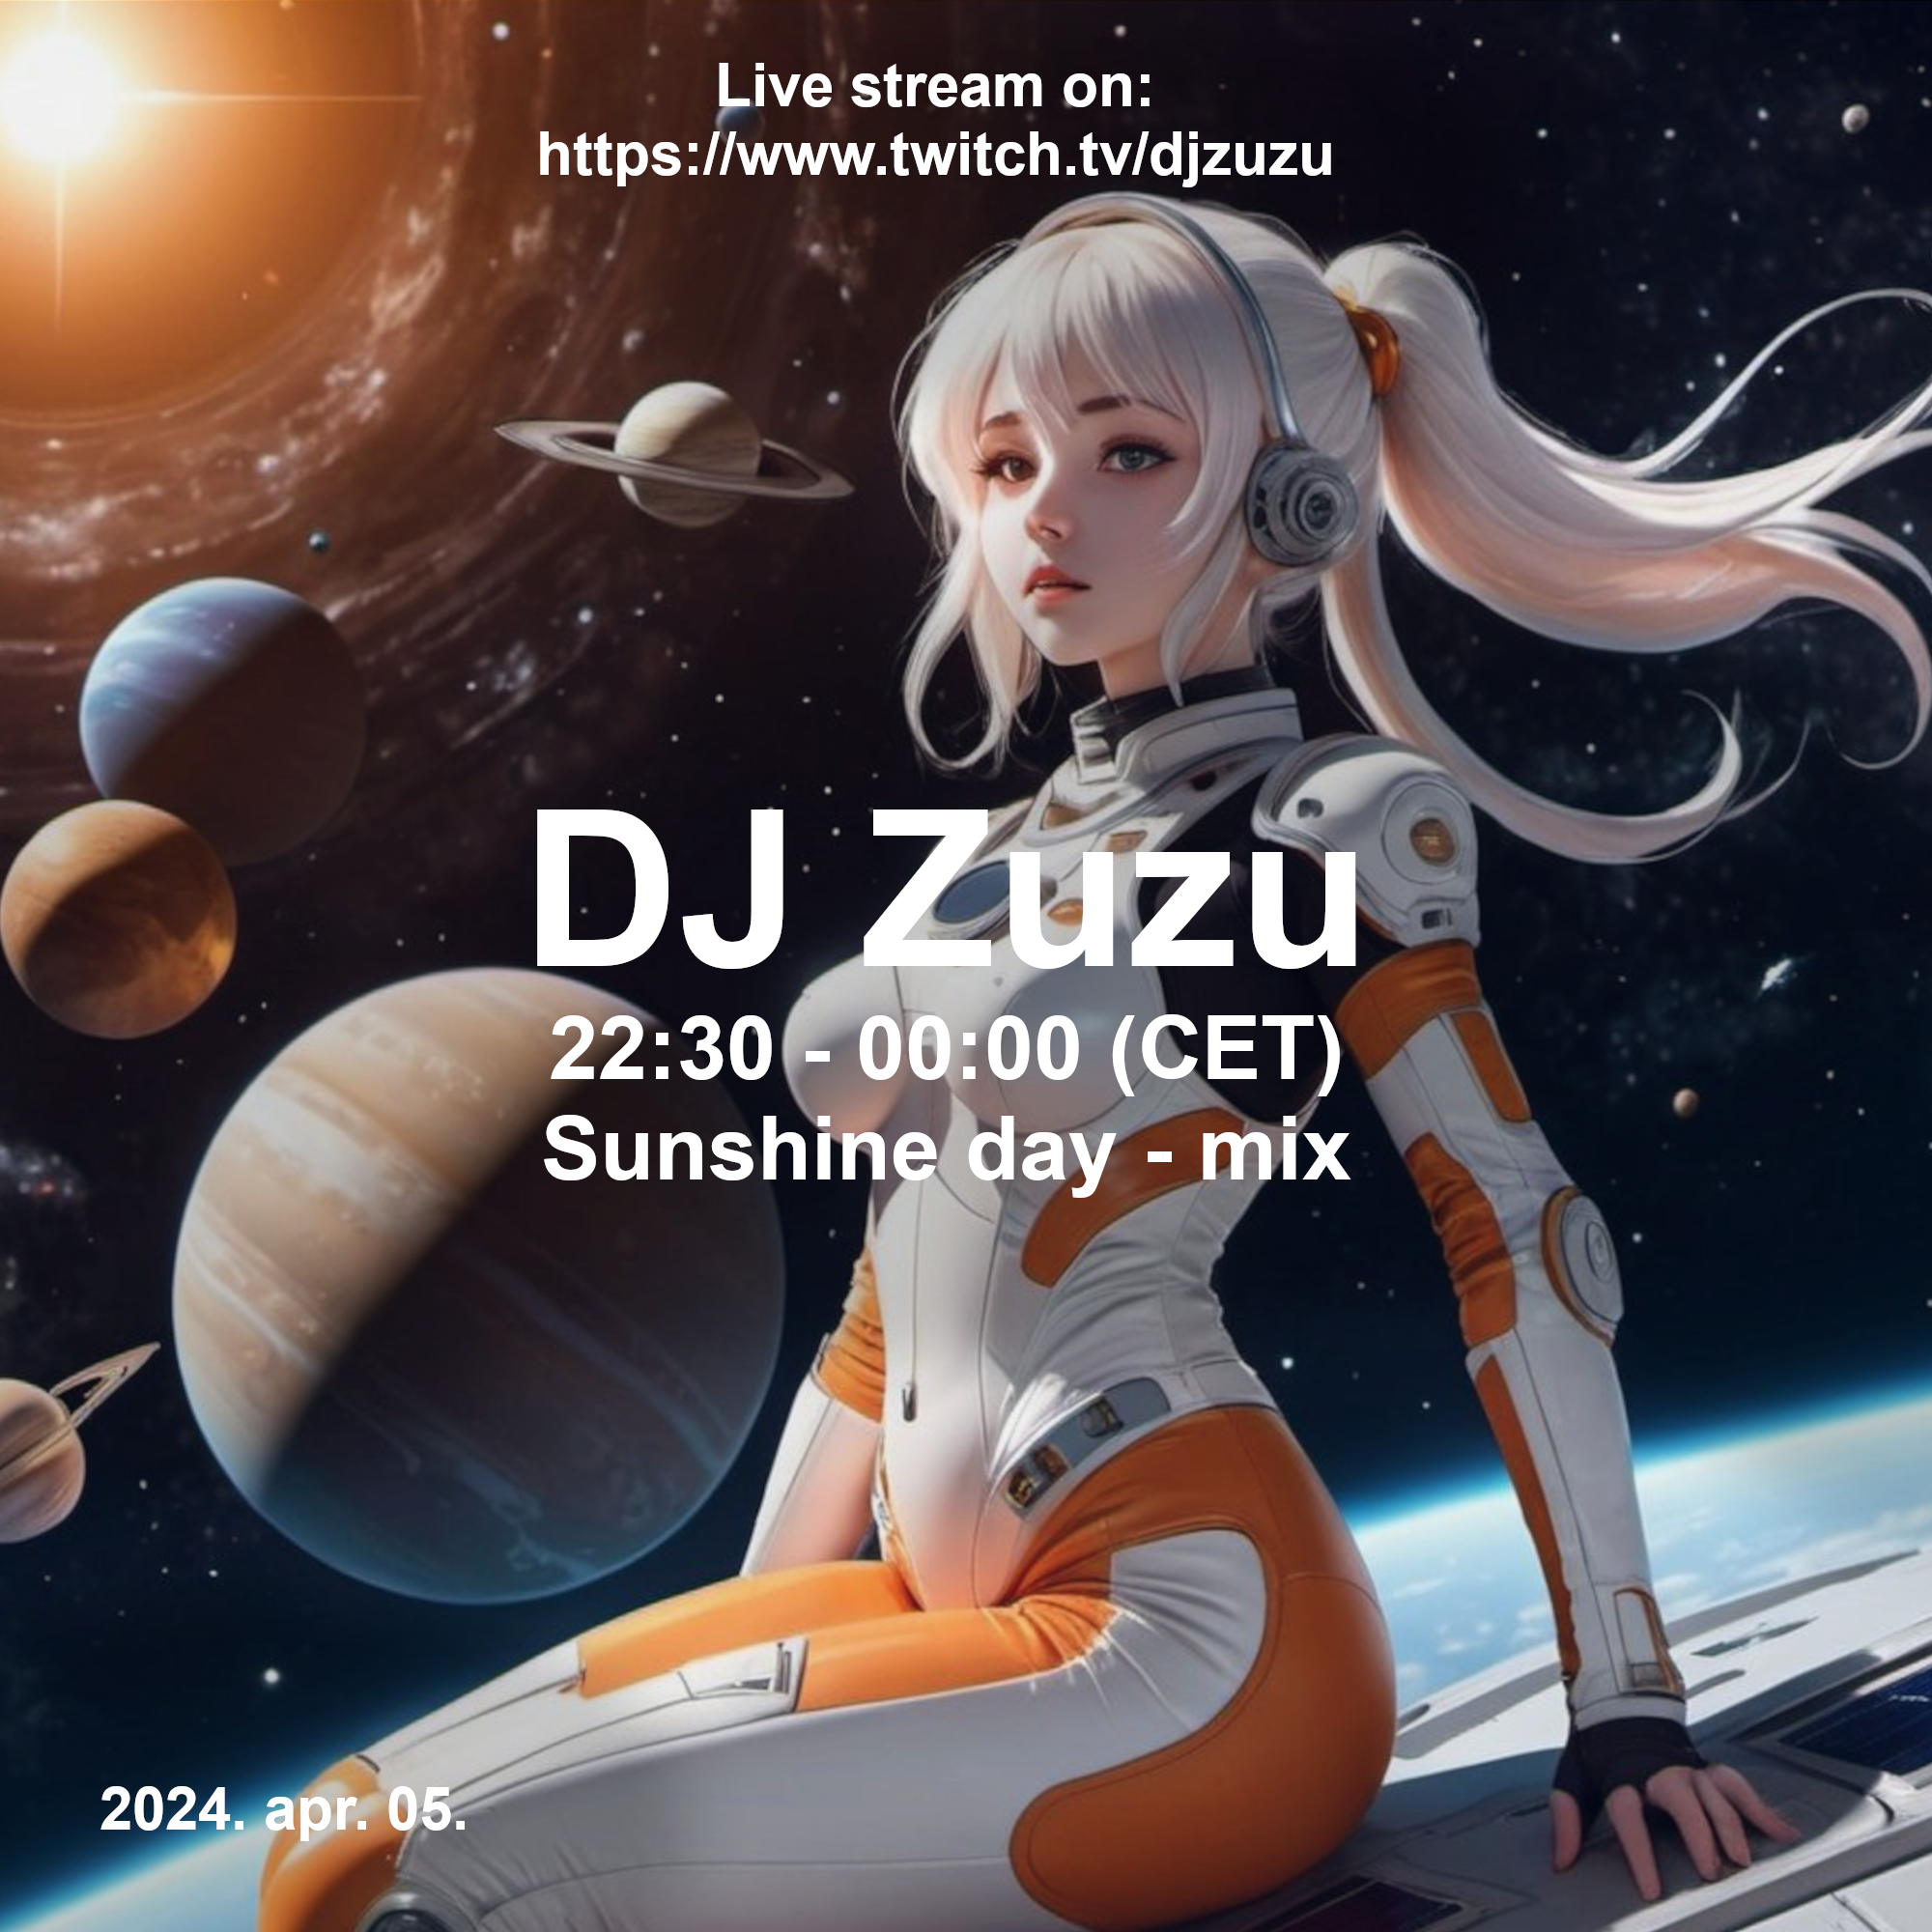 Dj Zuzu Sunshine day mix event flyer 20240405